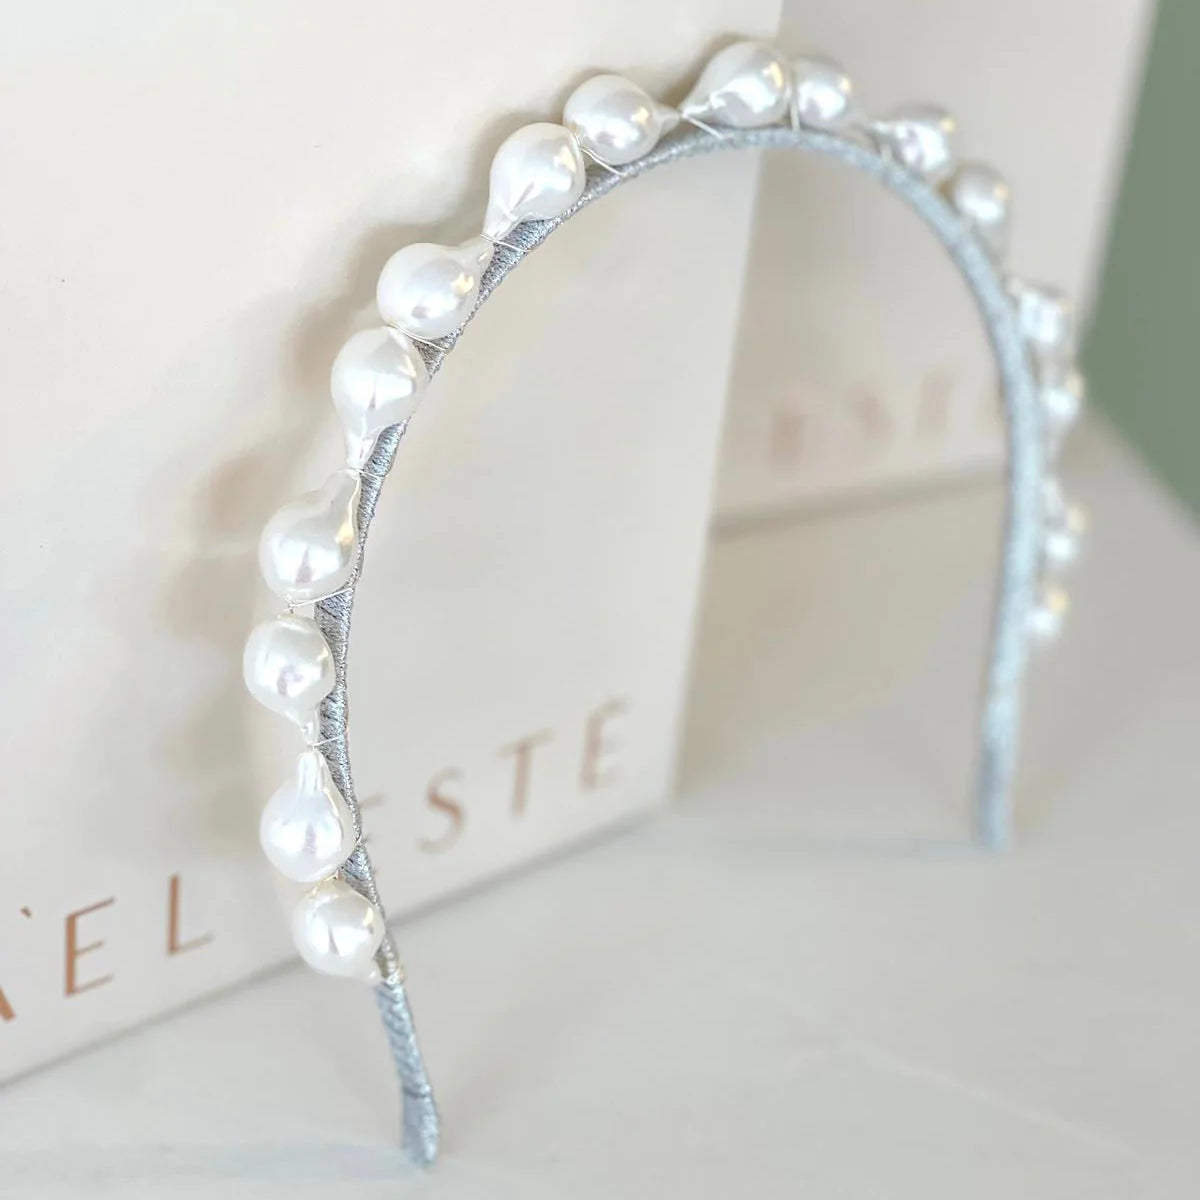 A'el Este - Bellini - Bridal Pearl Headband - Silver